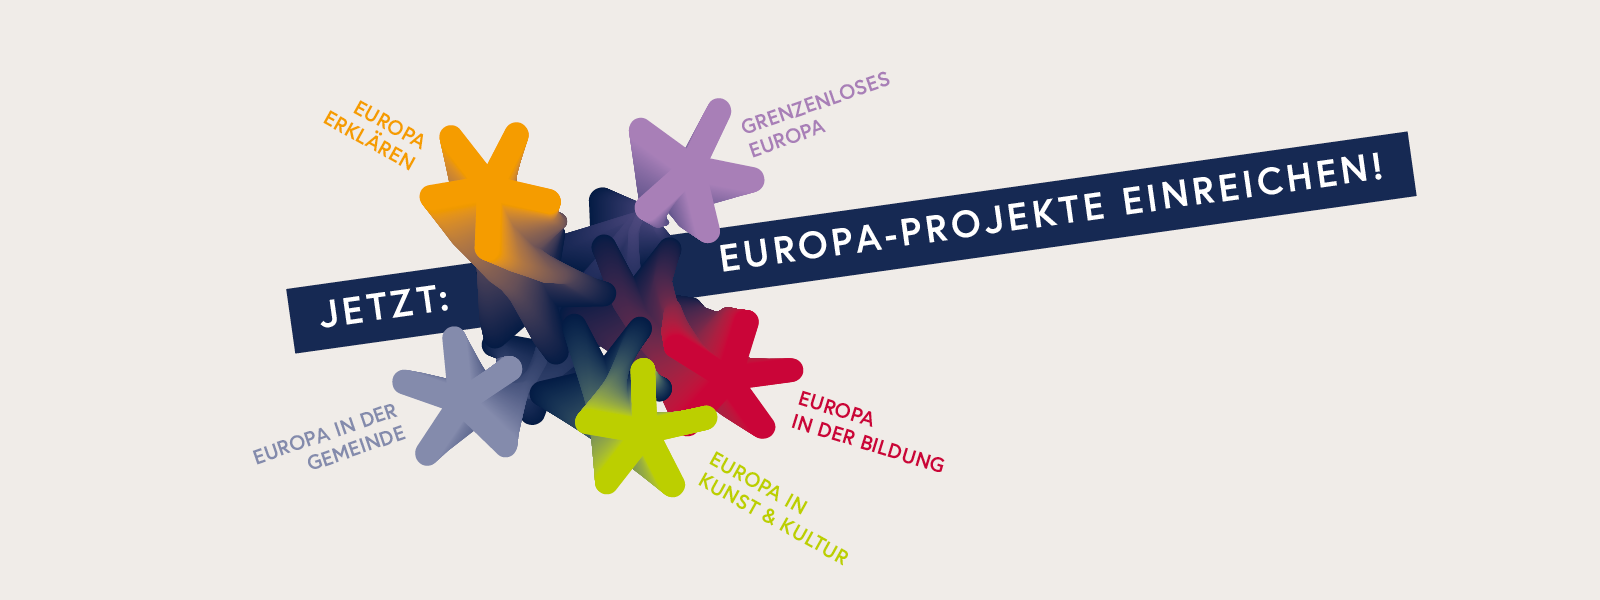 Ab Jänner 2023: Europa-Projekte einreichen